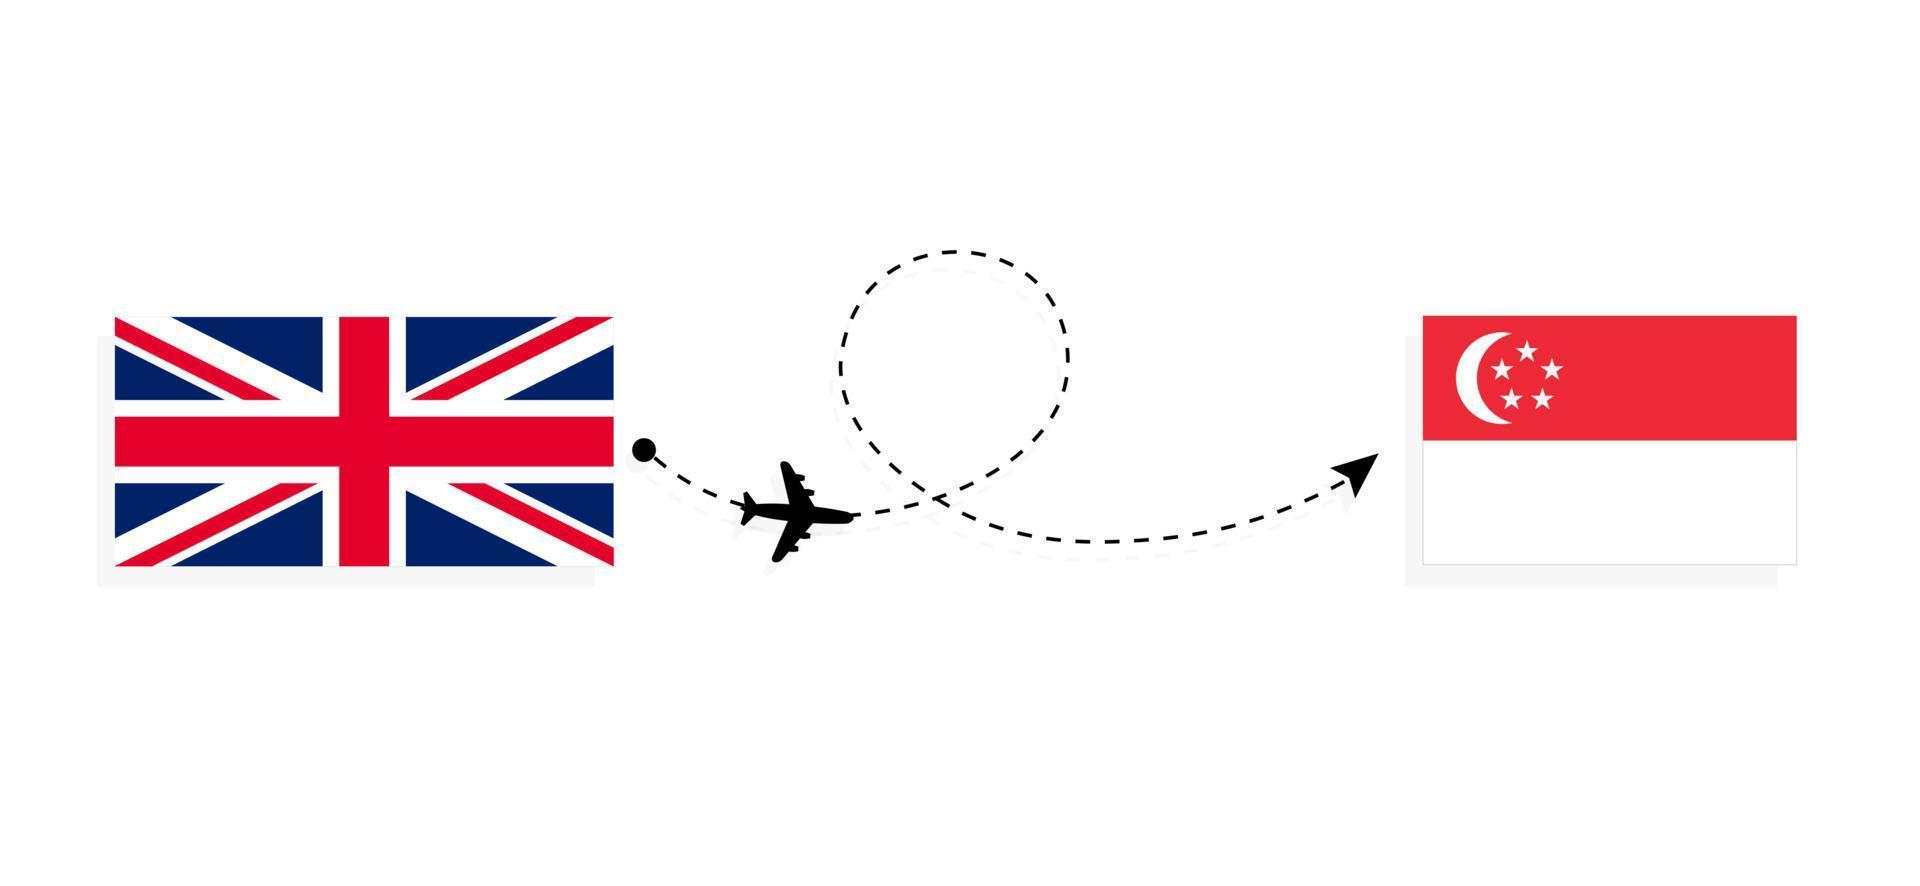 flygning och resor från Storbritannien till singapore med passagerarflygplan vektor